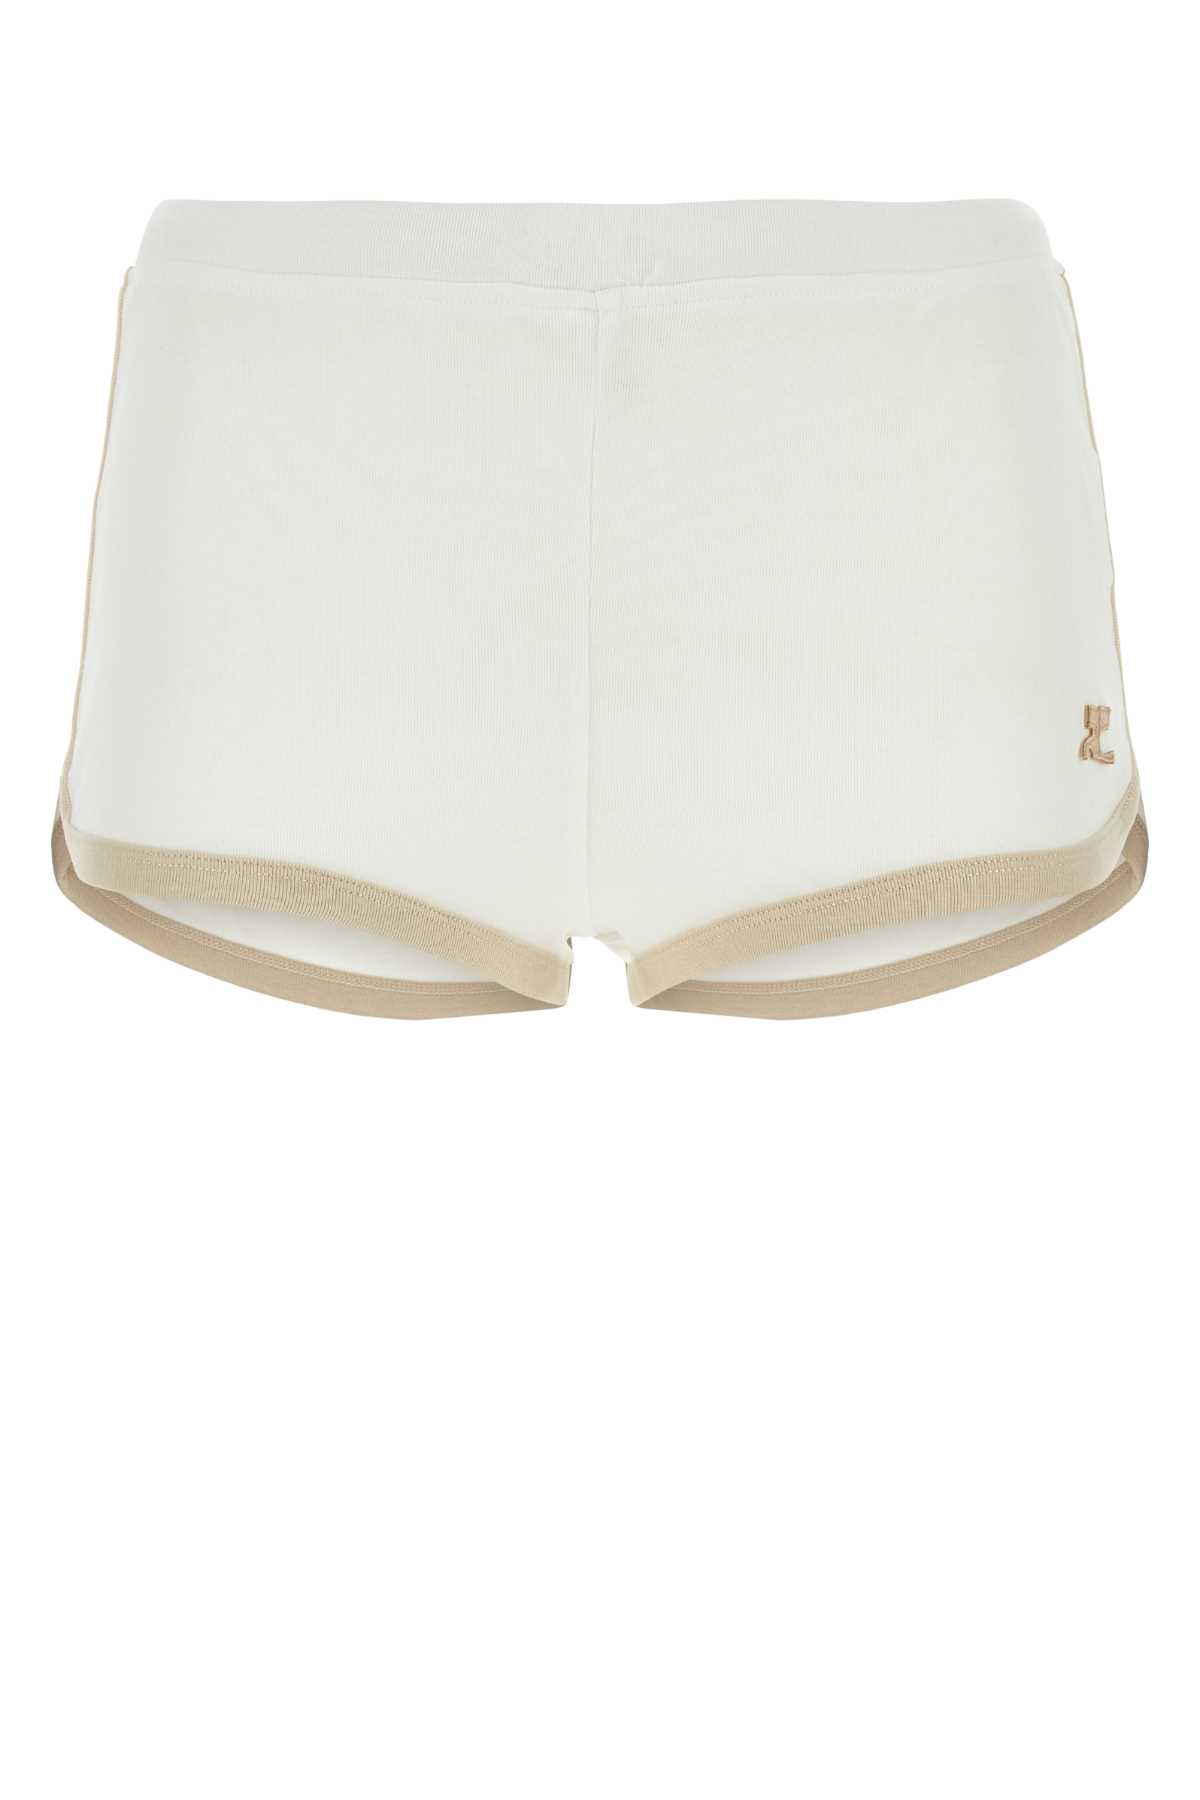 Courrèges White Cotton Shorts